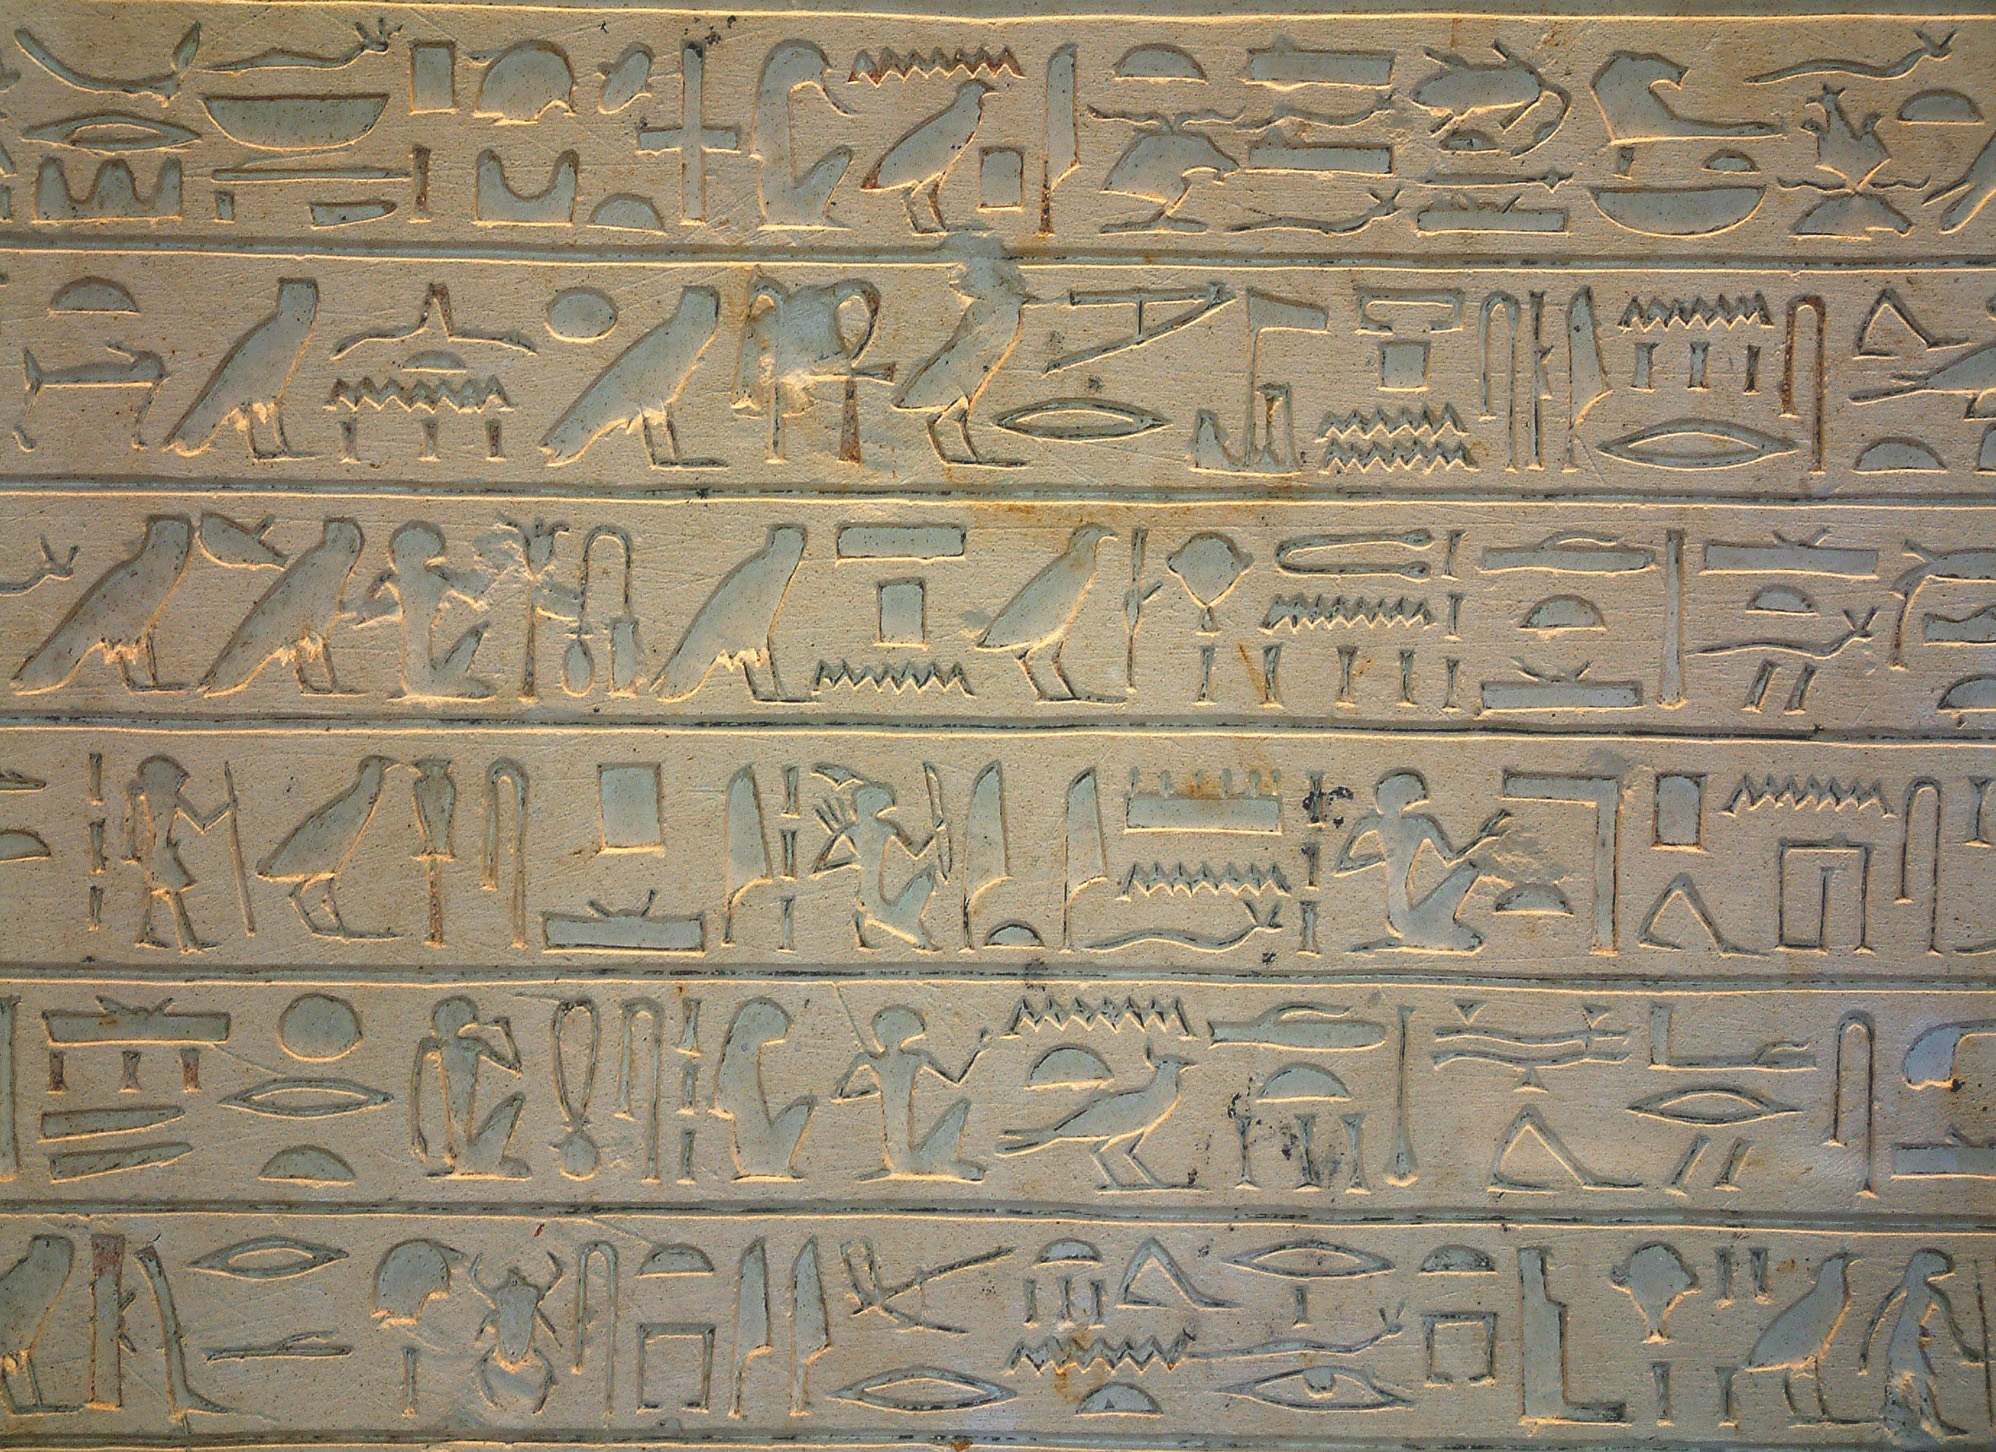 Comment les Égyptiens s'y prenaient-ils pour faire une multiplication ? Hiéroglyphes. Stèle exposée au Musée du Louvre, Paris. © Guillaume Blanchard, Wikimedias Commons, CC by-sa 3.0